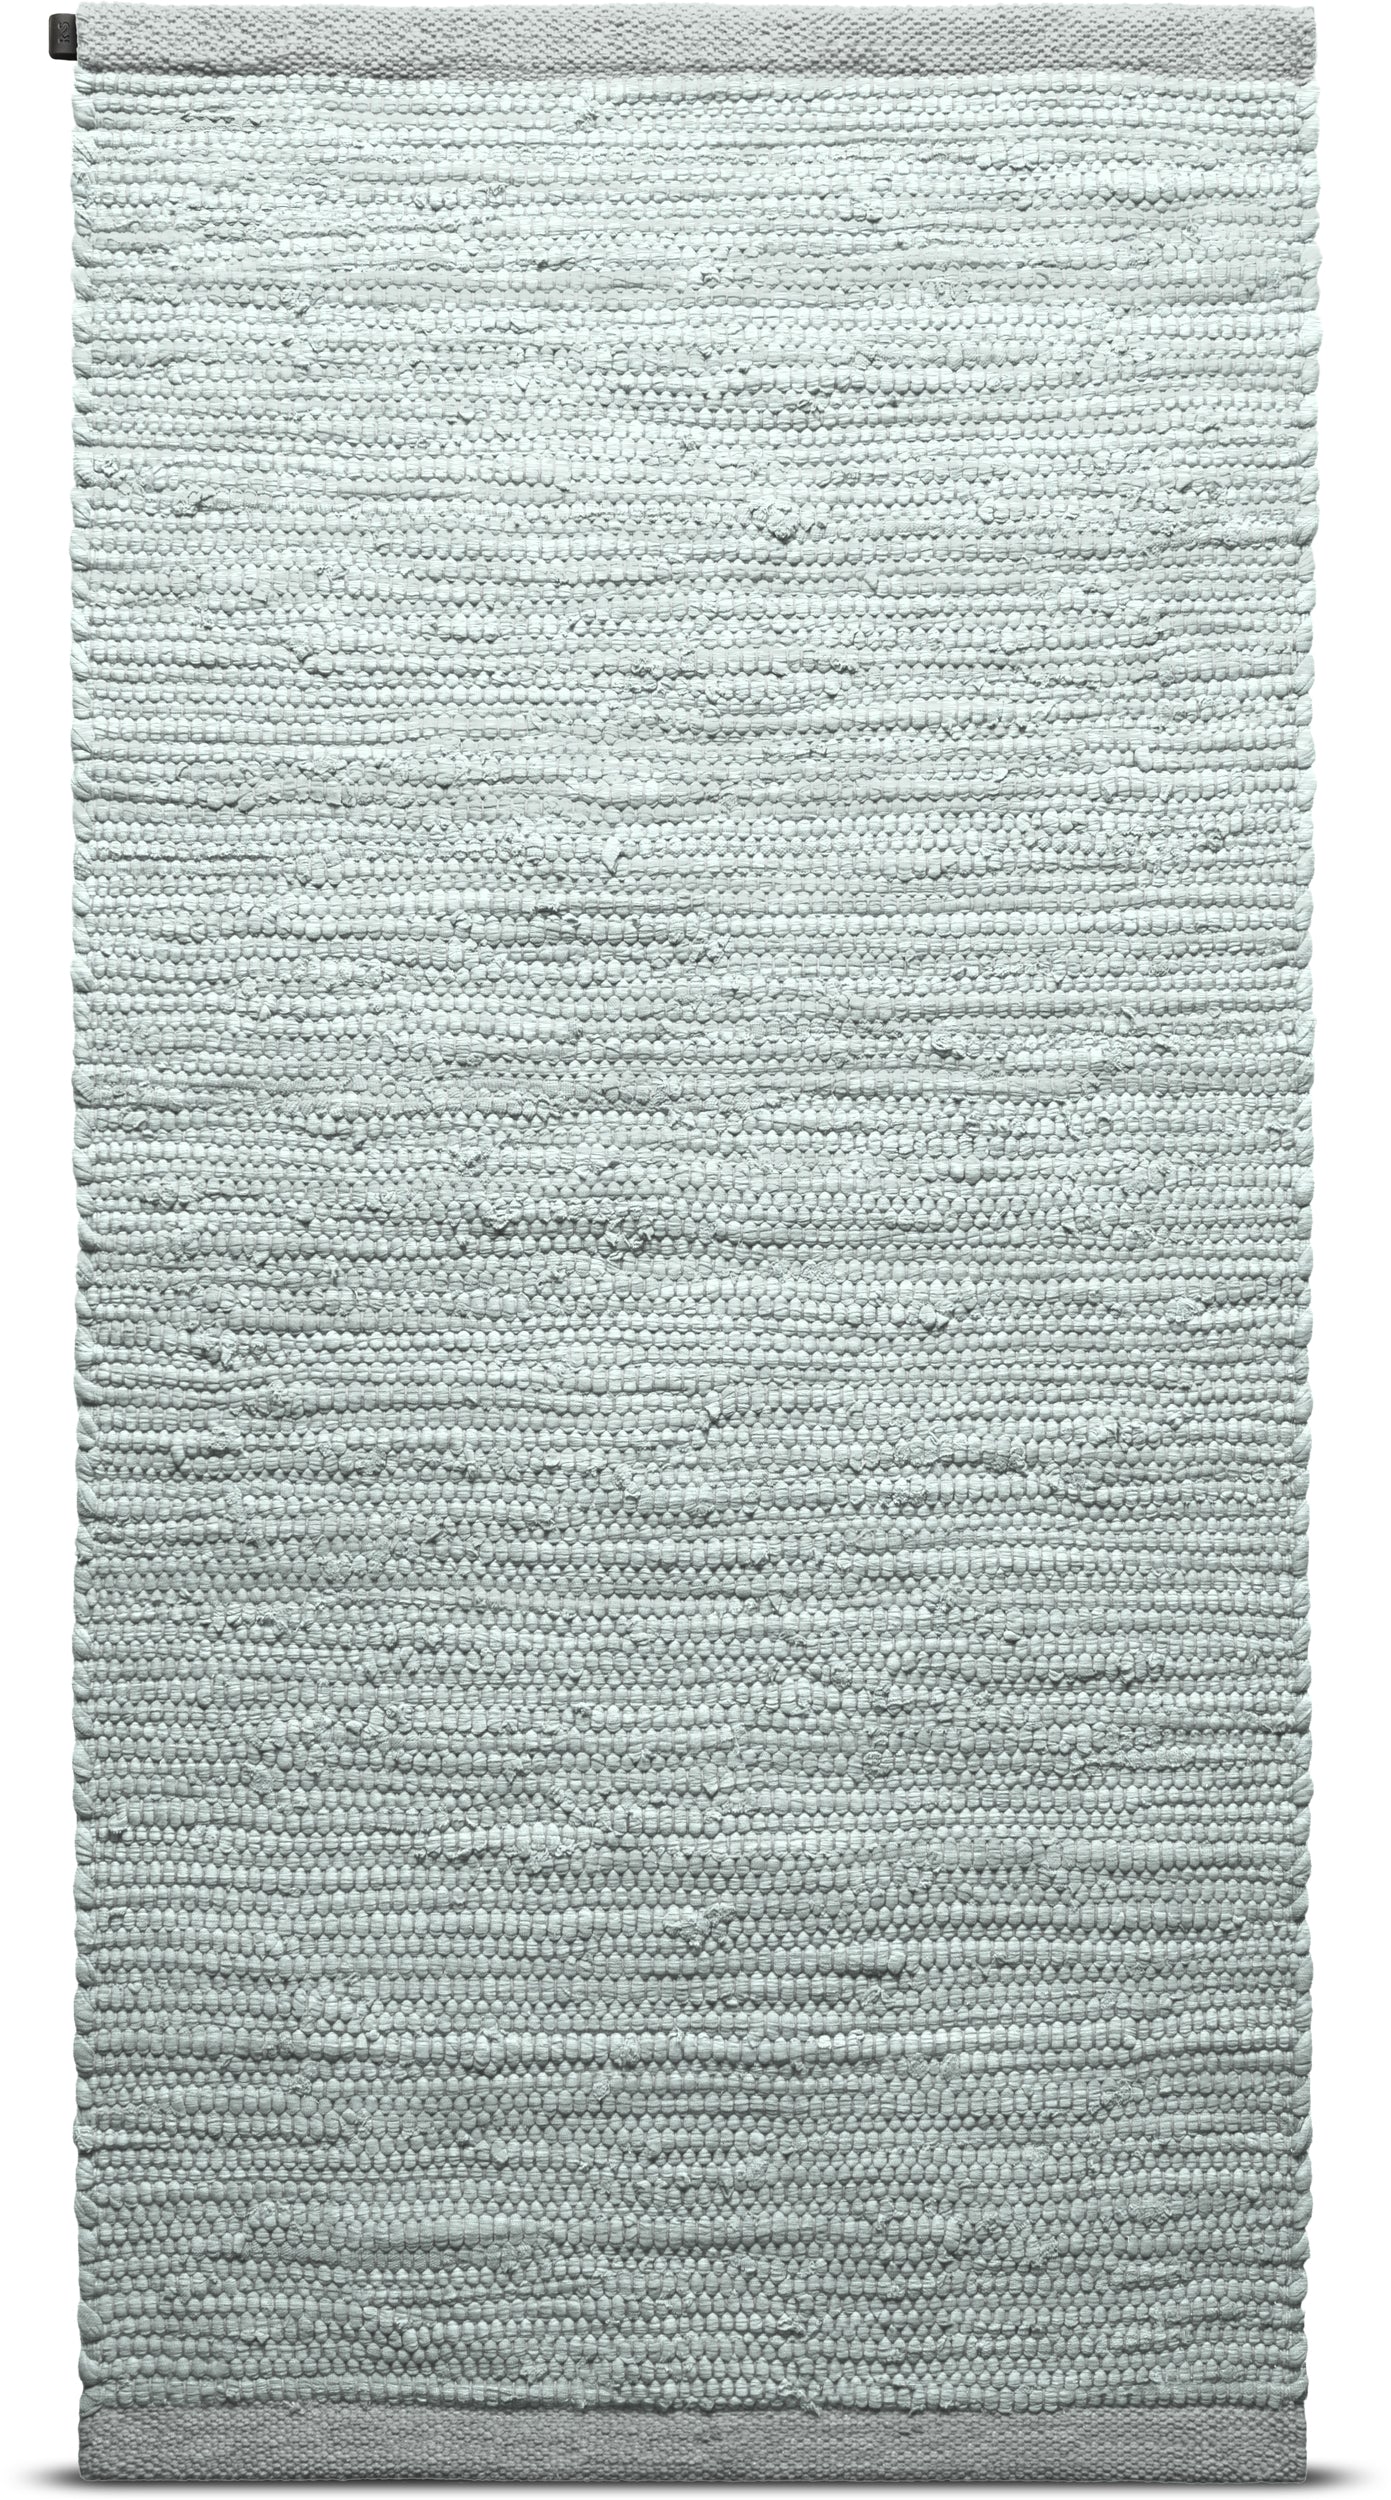 Tappeto di cotone solido 60 x 90 cm, menta